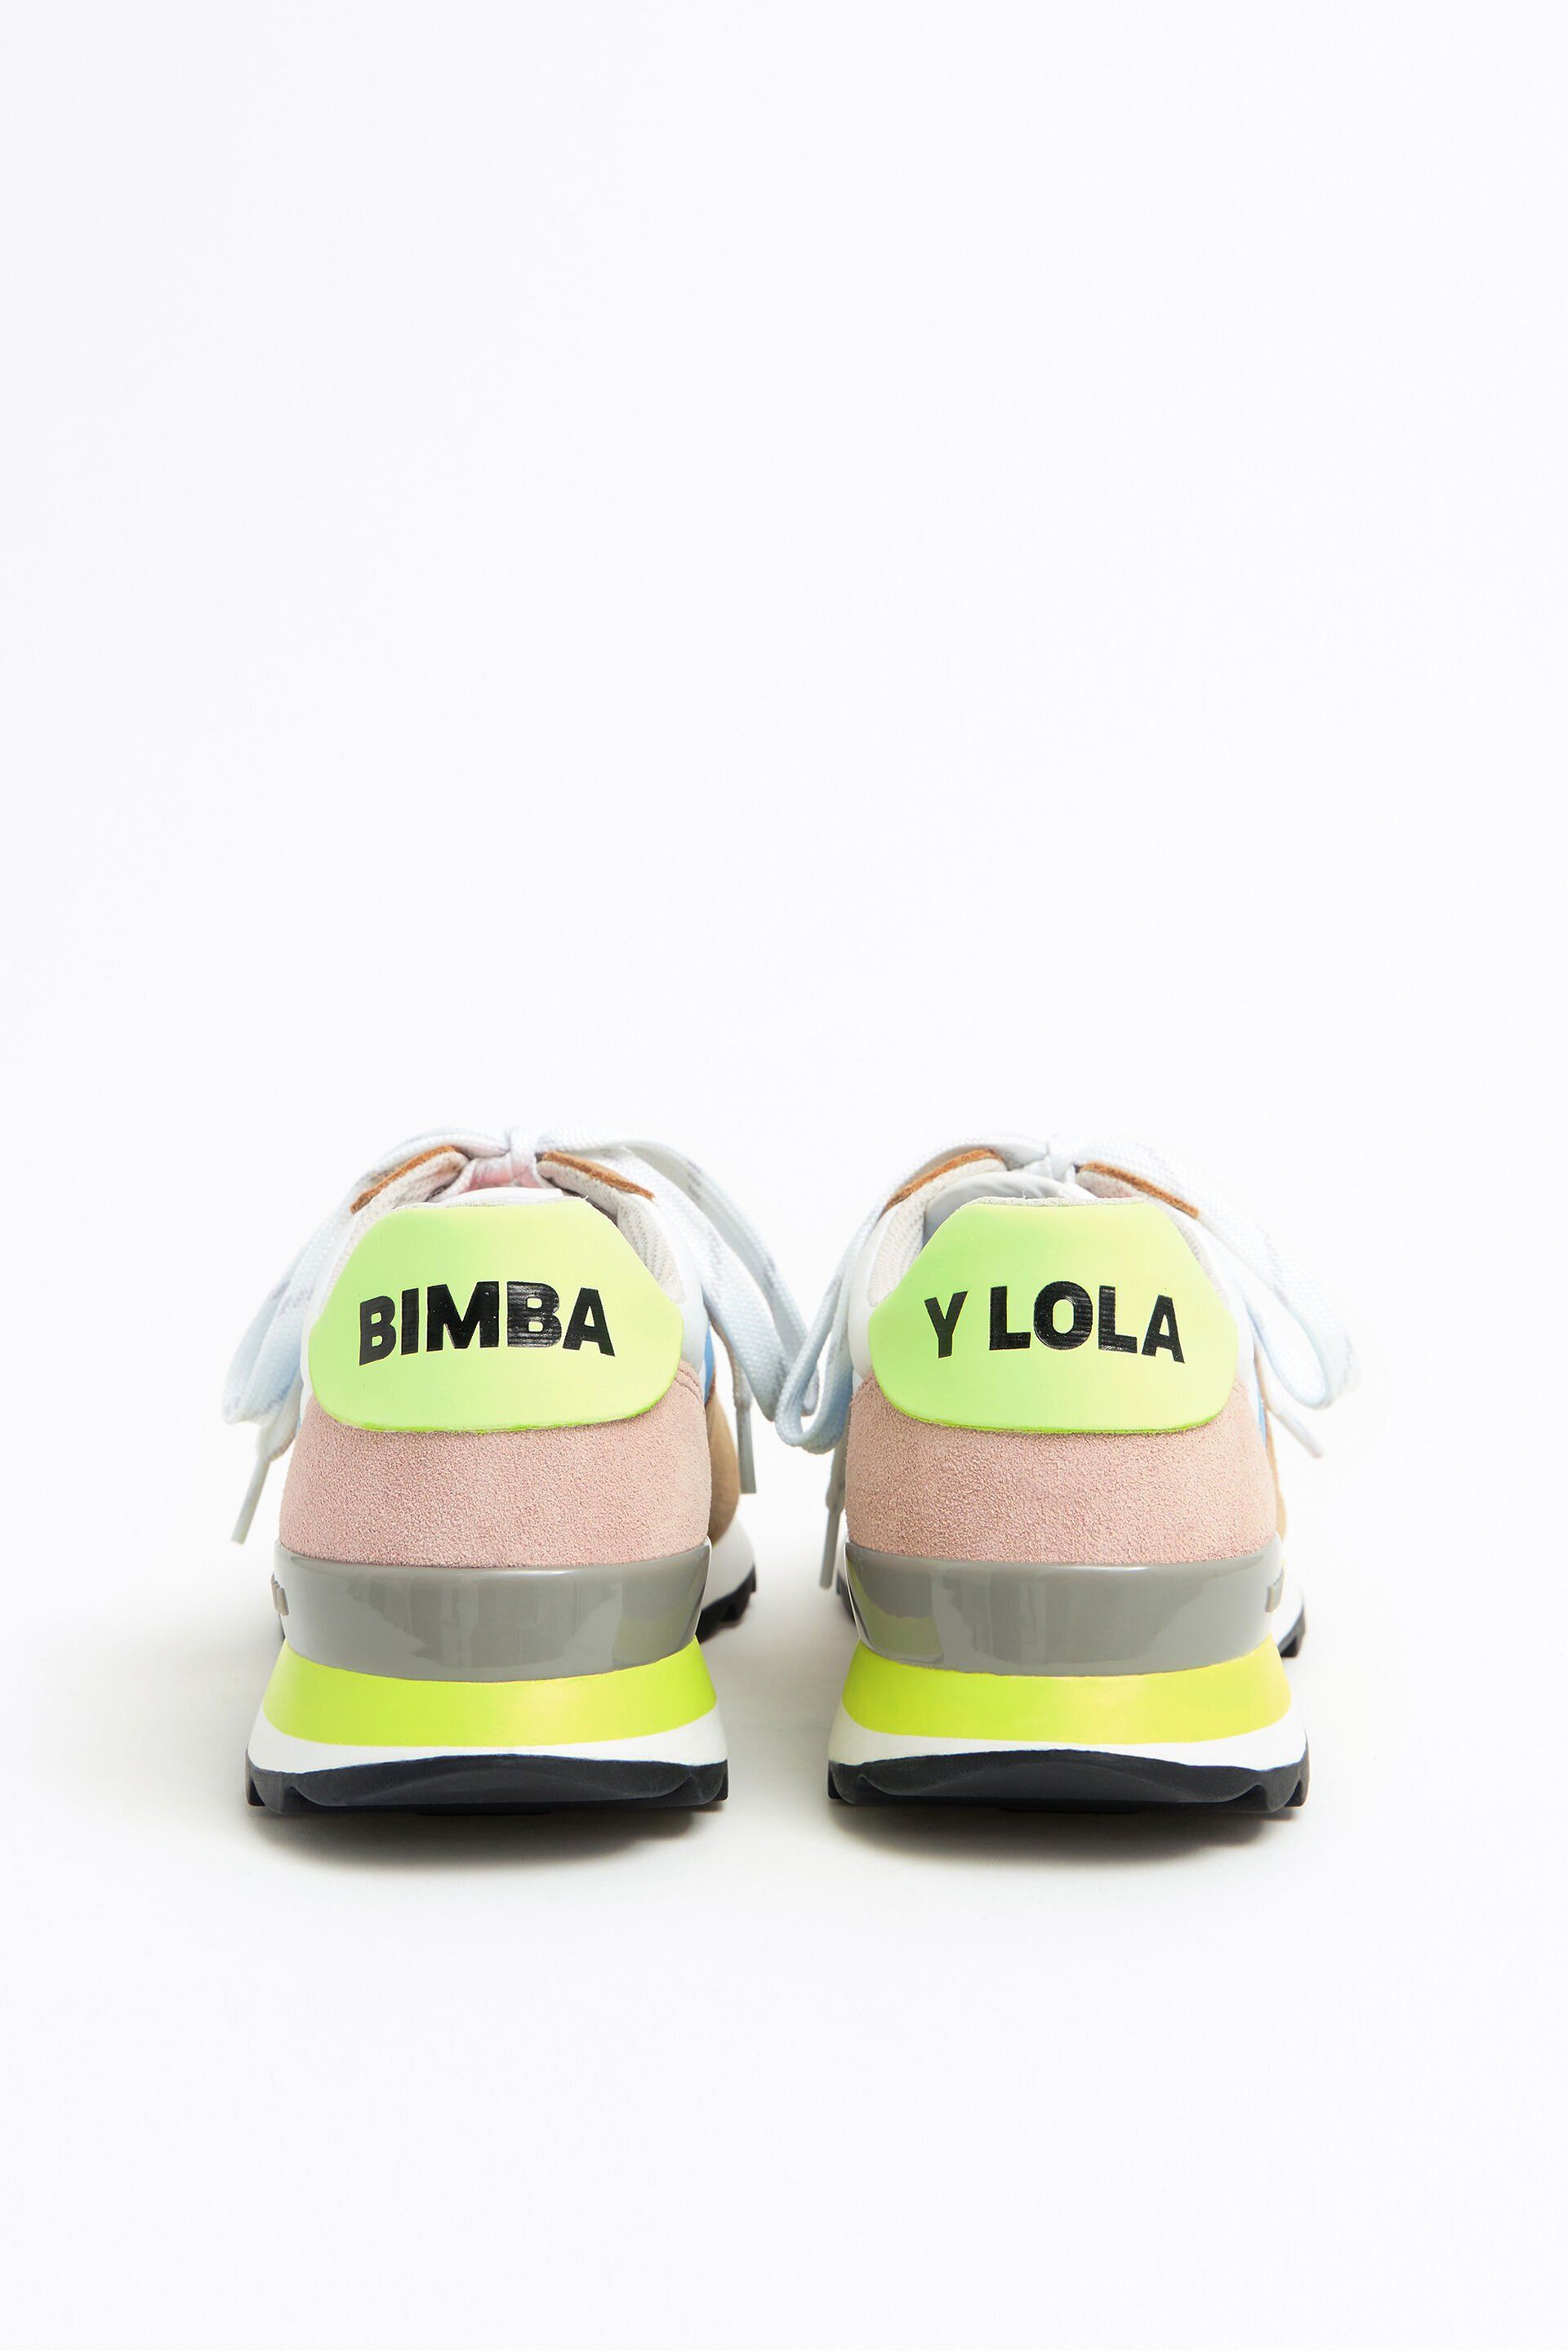 Estas zapatillas de Bimba y Lola rebajadas tienen todas las